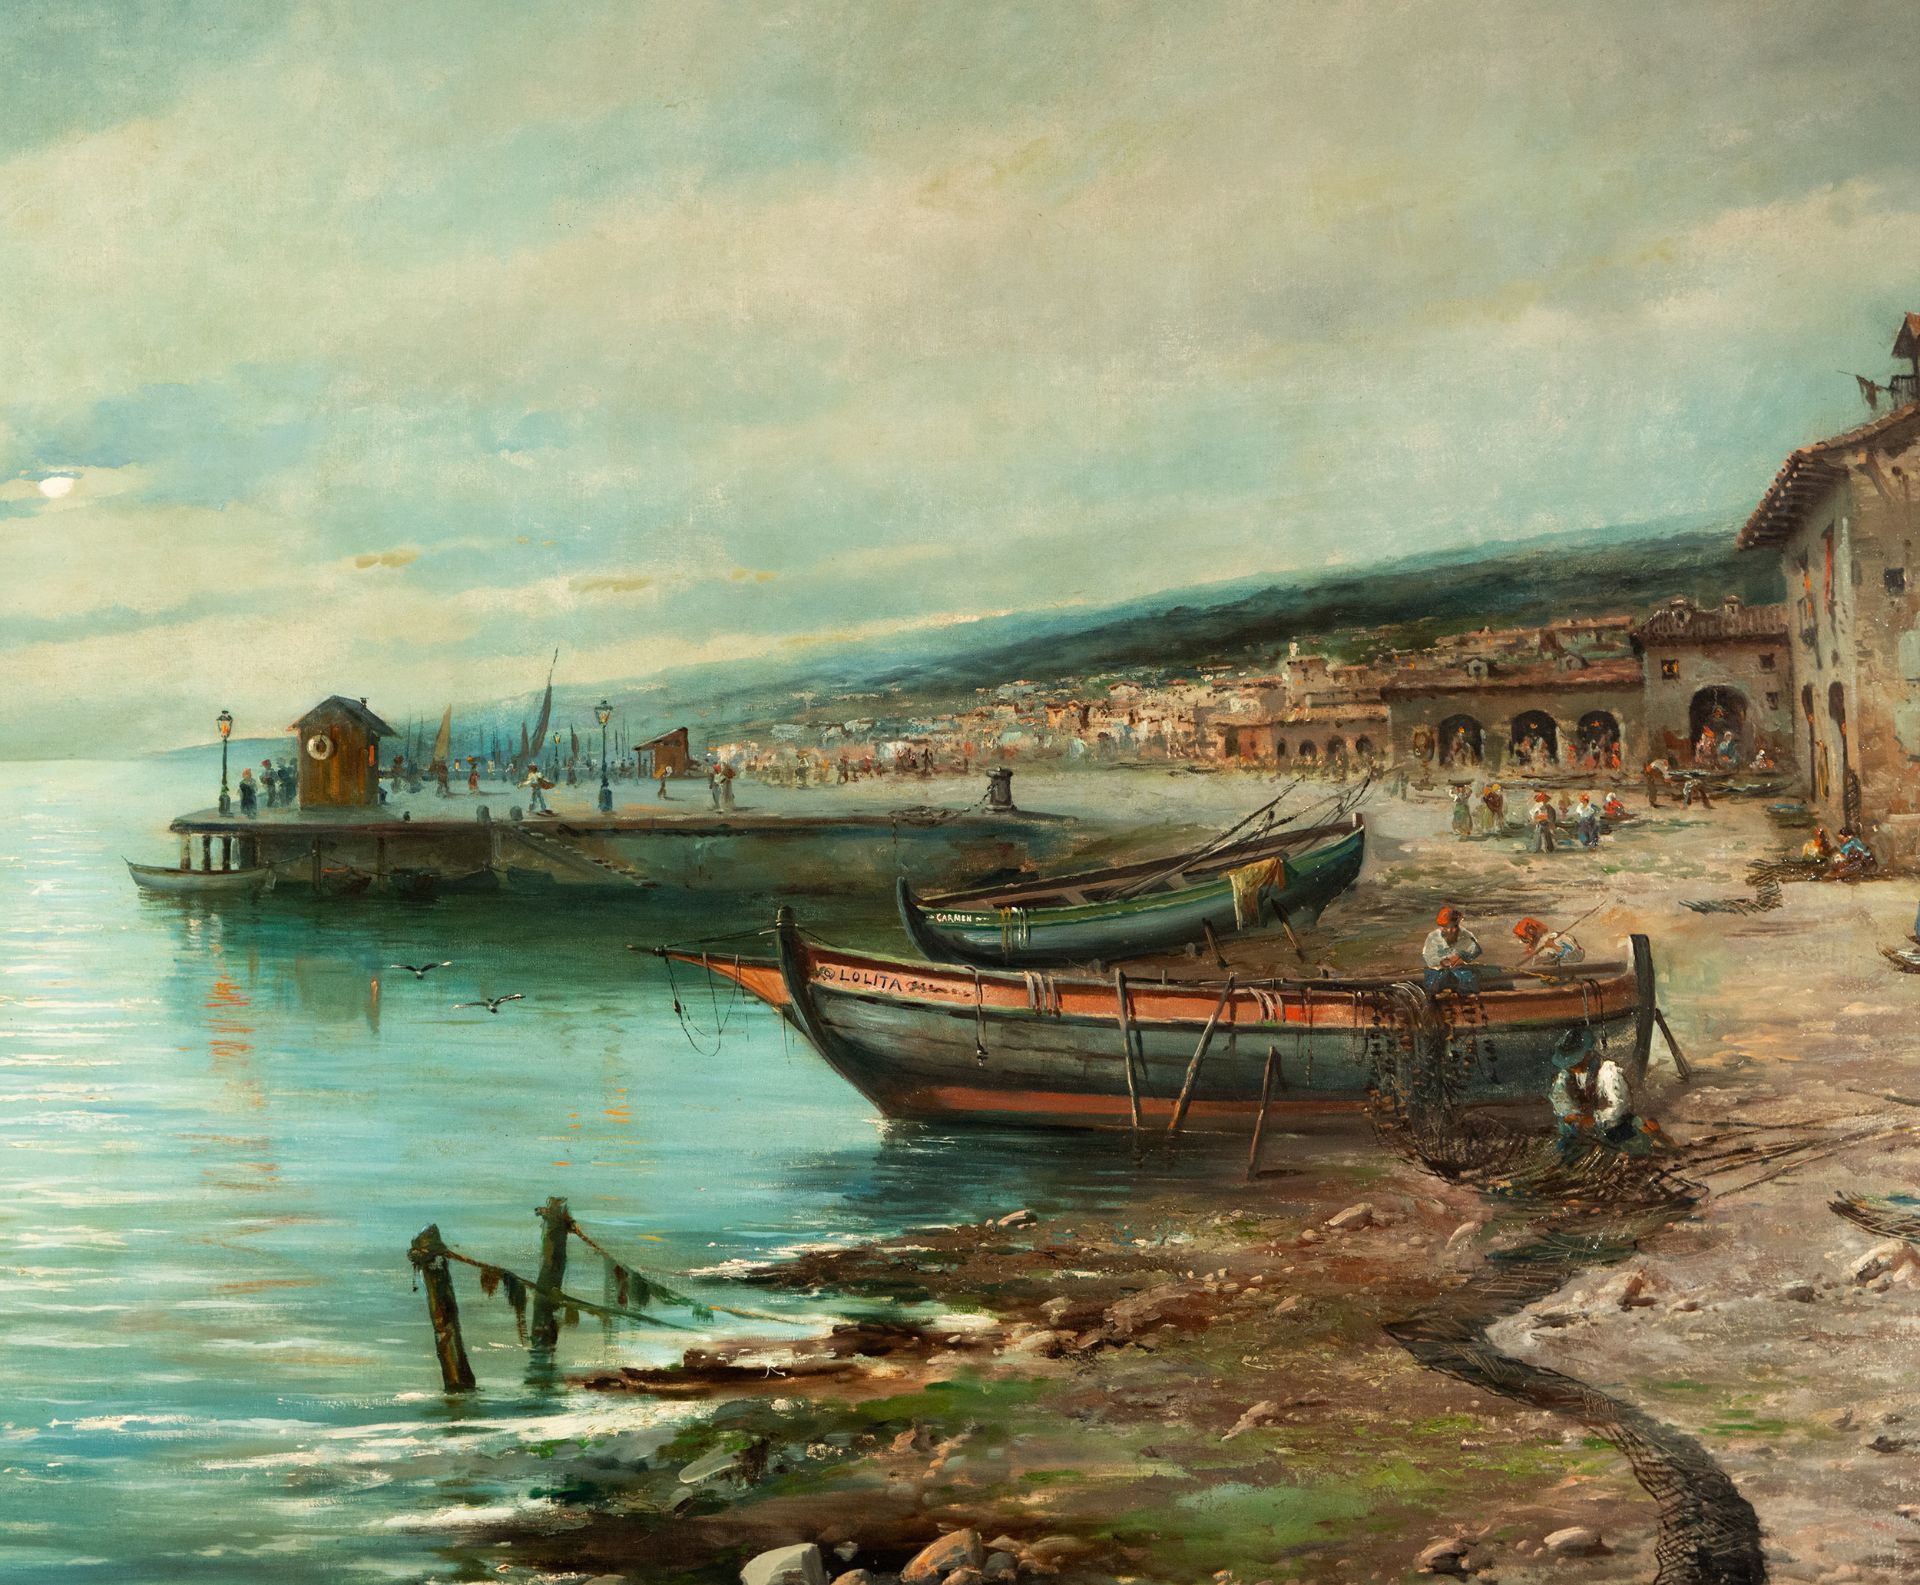 Great Marina, signed Emilio Álvarez Aiyon, Portugal, 1904 - Image 2 of 9